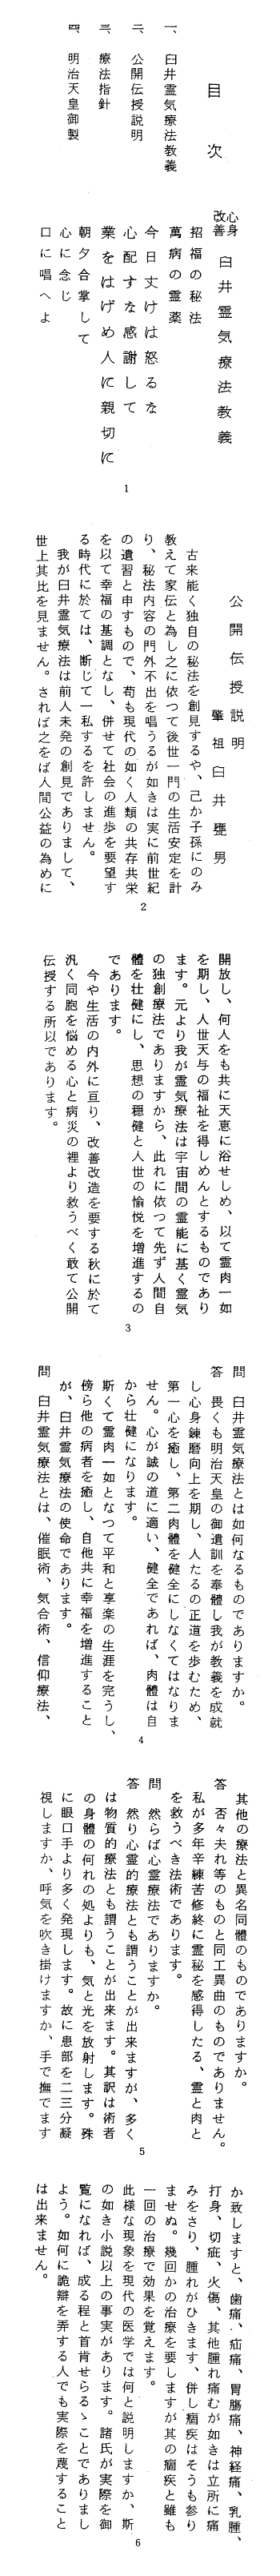 usui reiki hikkei páginas 1-6